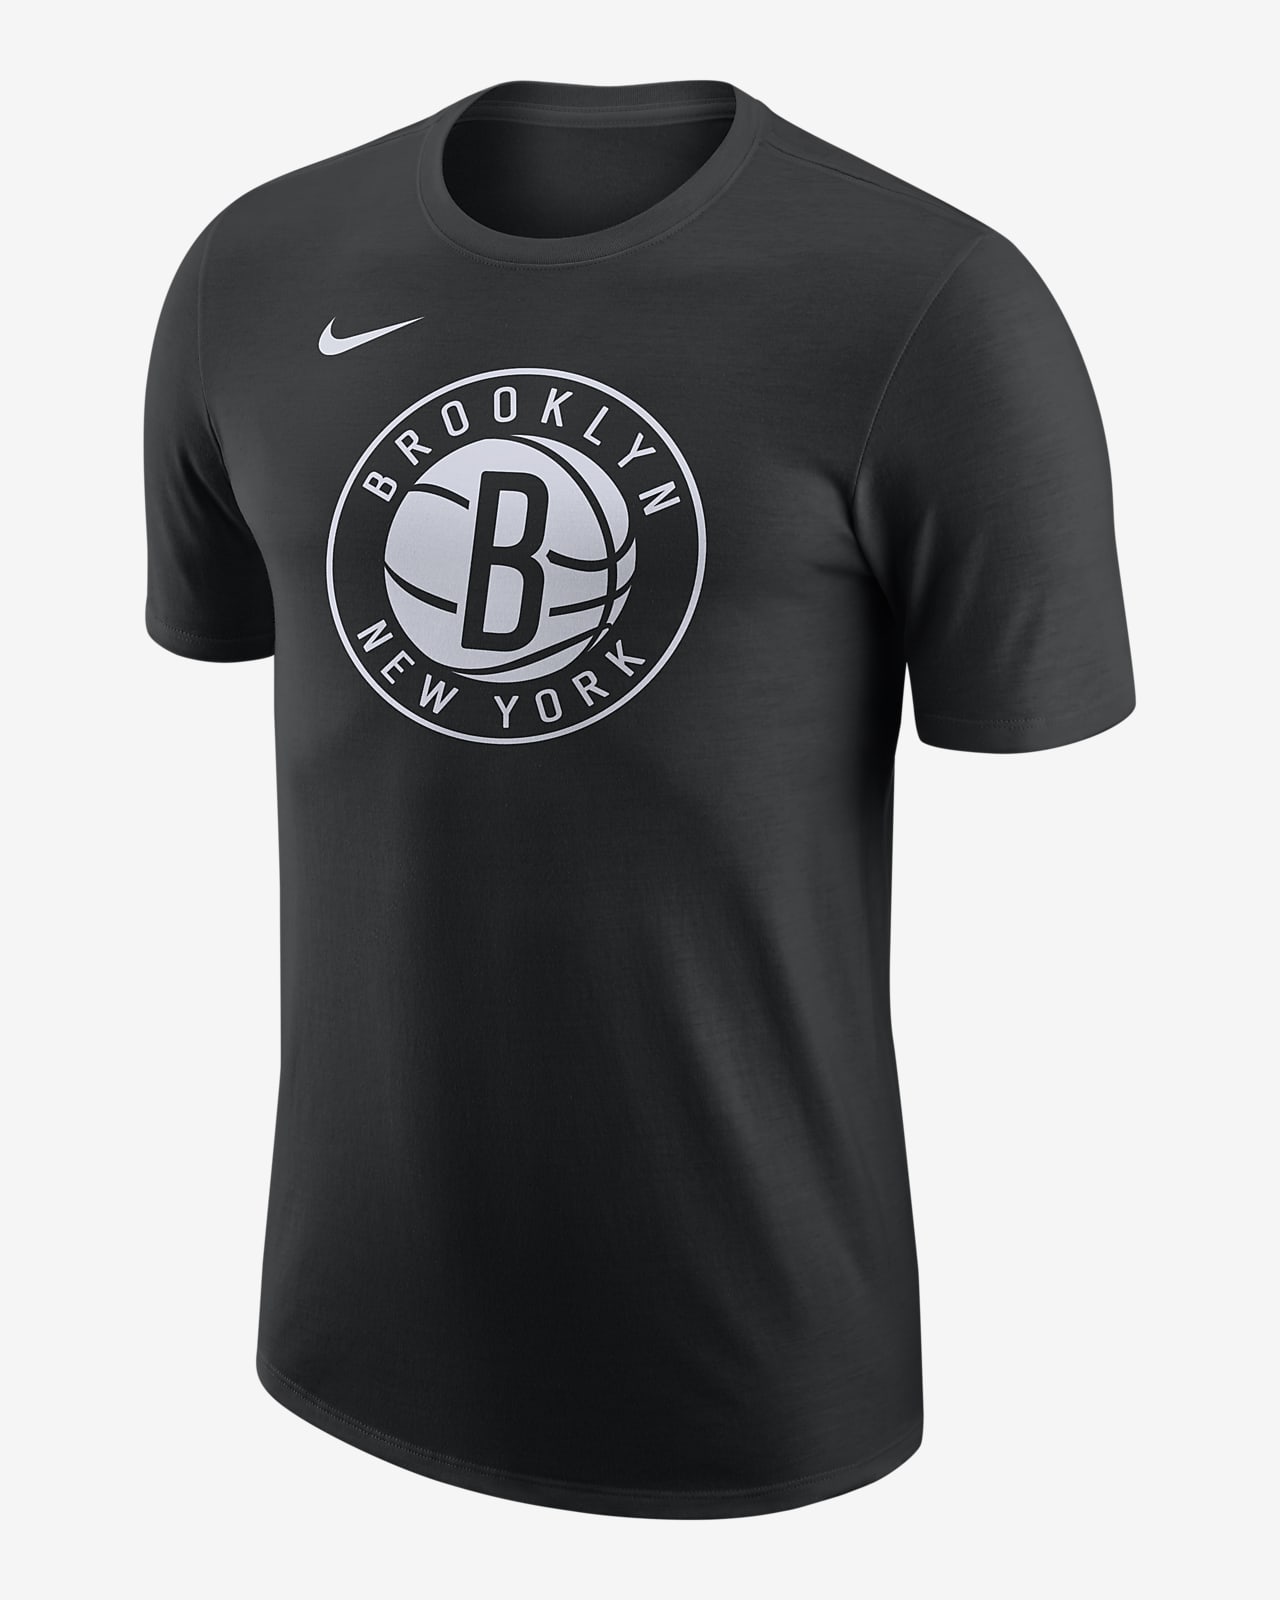 Playera Nike de la NBA para hombre Brooklyn Nets Essential